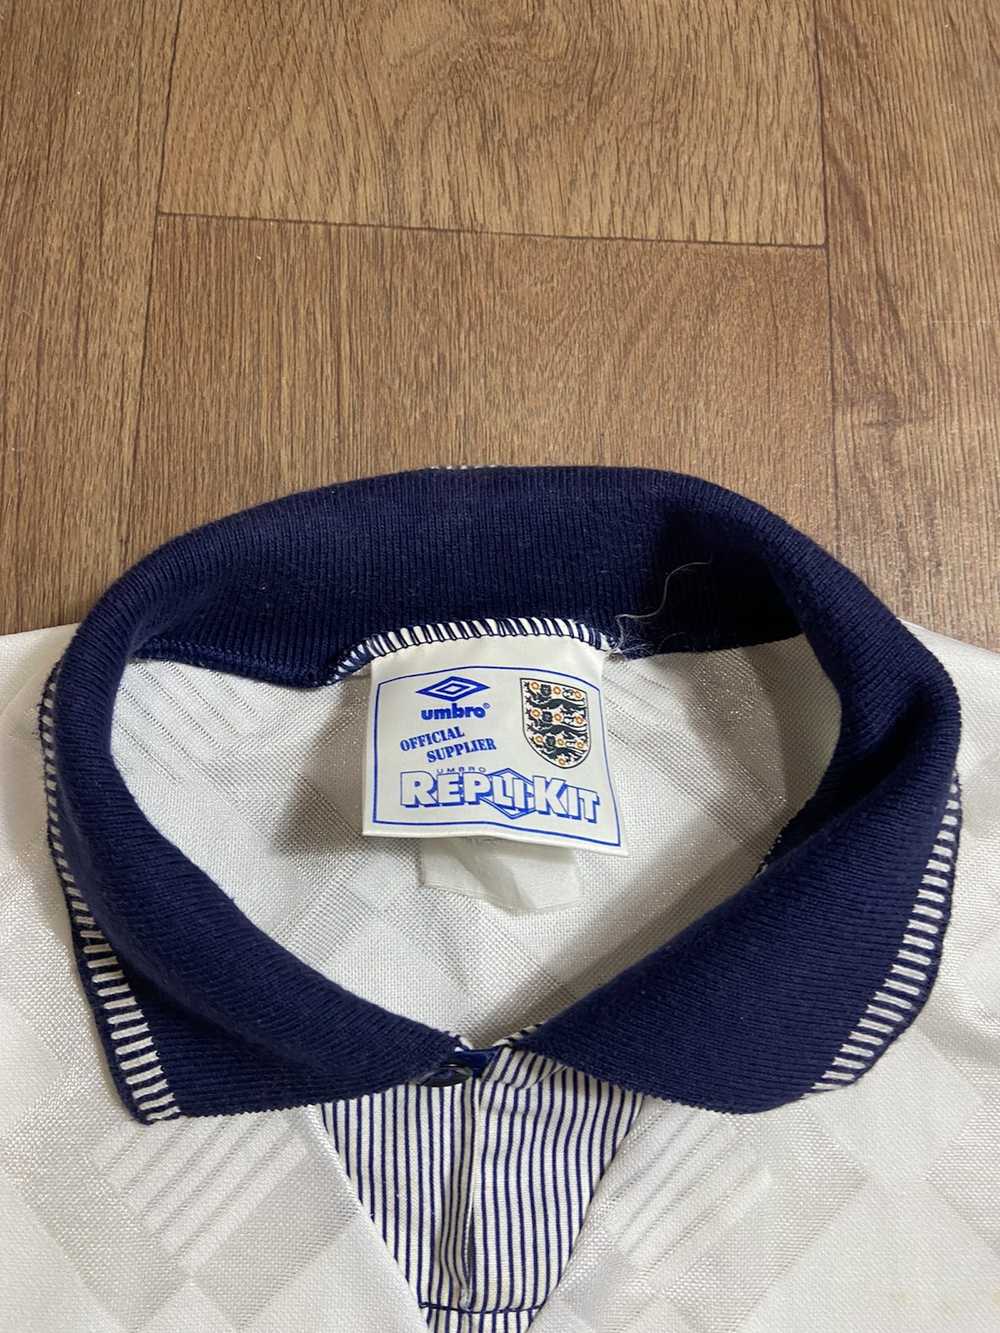 Soccer Jersey × Streetwear × Vintage ENGLAND VINT… - image 3